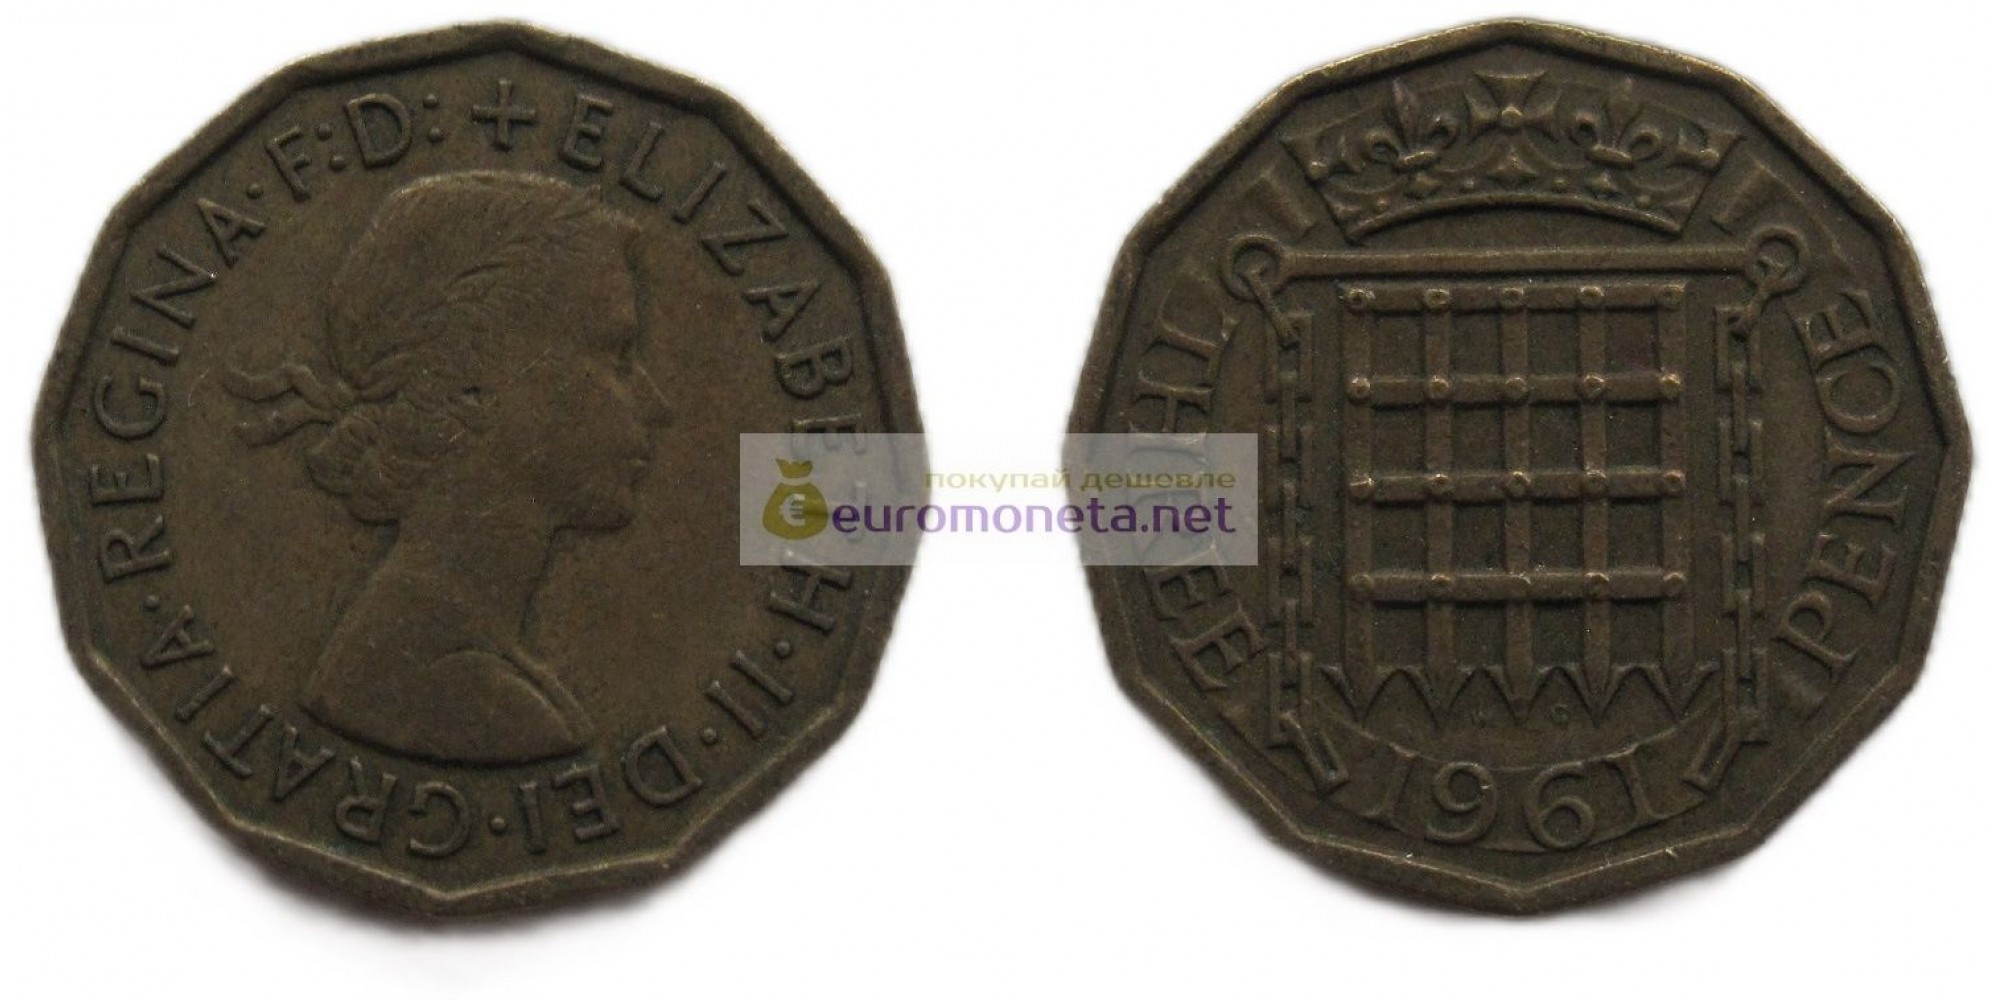 Великобритания 3 пенса 1961 год Никелевая латунь (жёлтый цвет). Королева Елизавета II